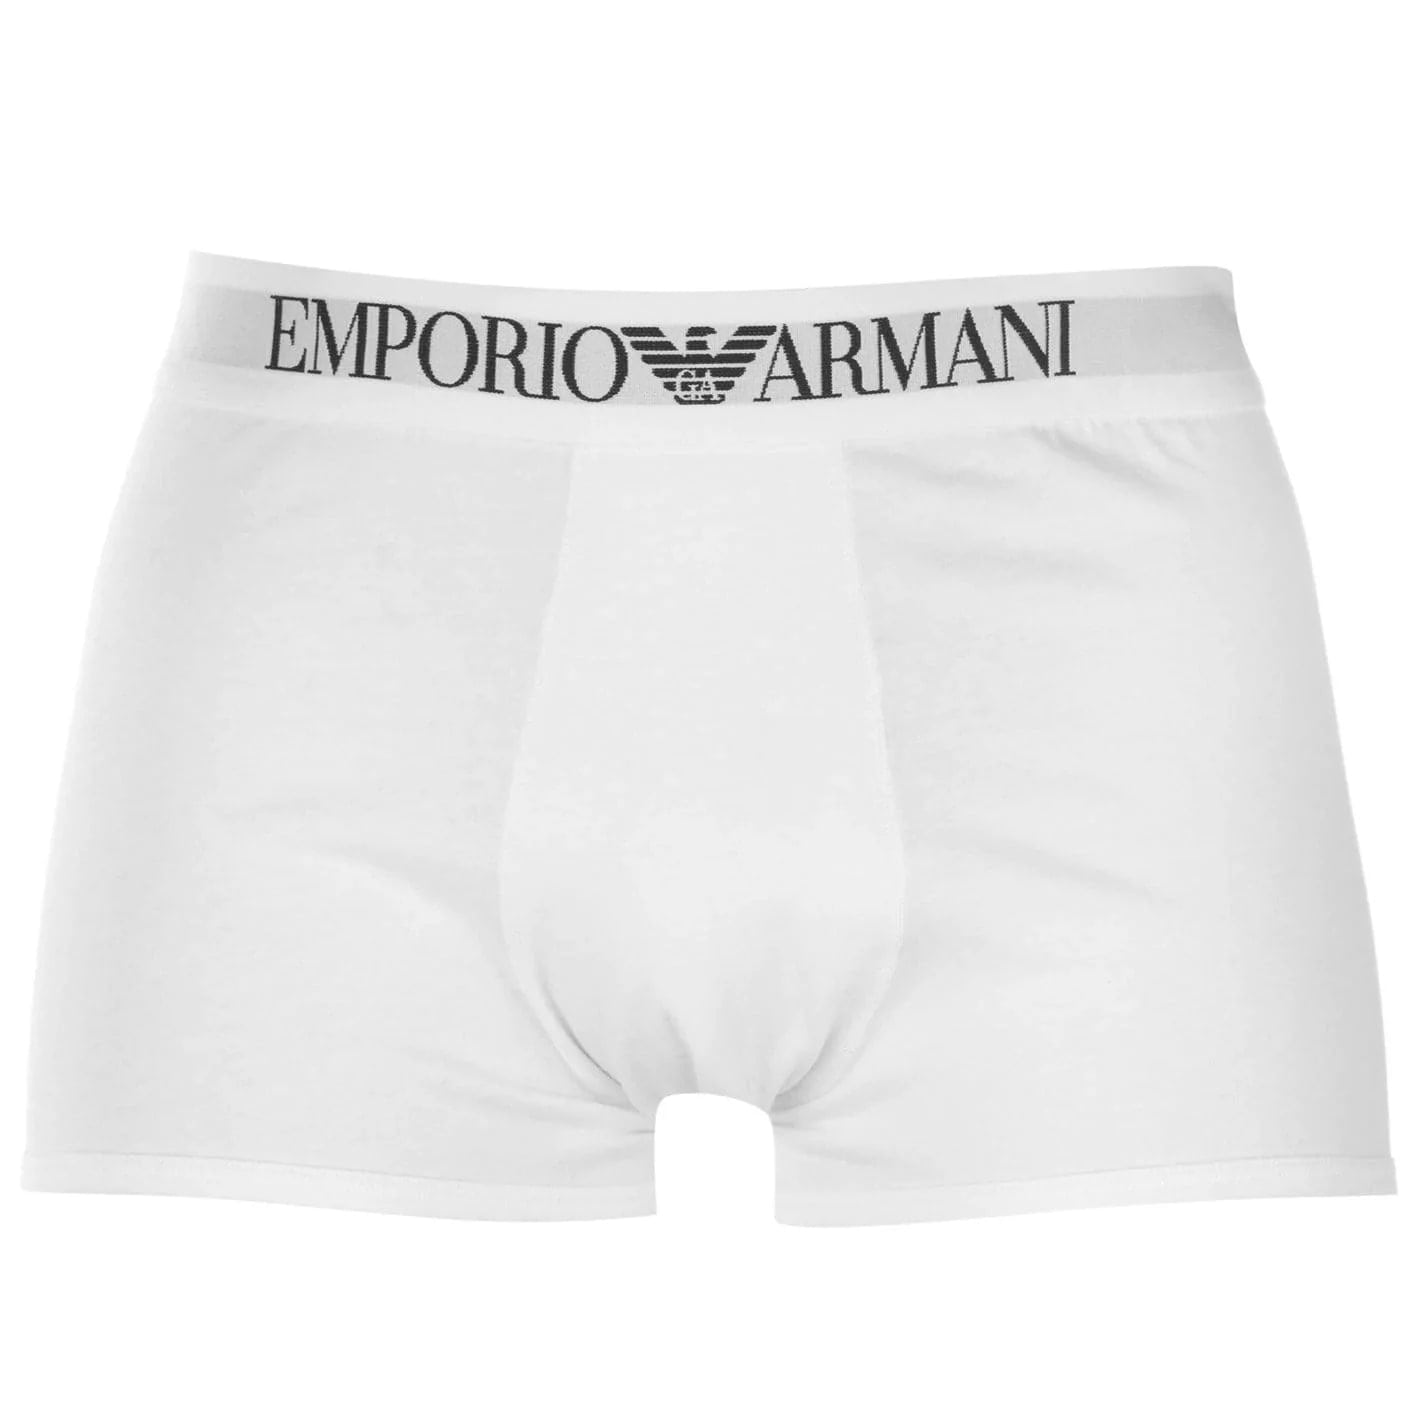 EMPORIO ARMANI underwear - Yooto